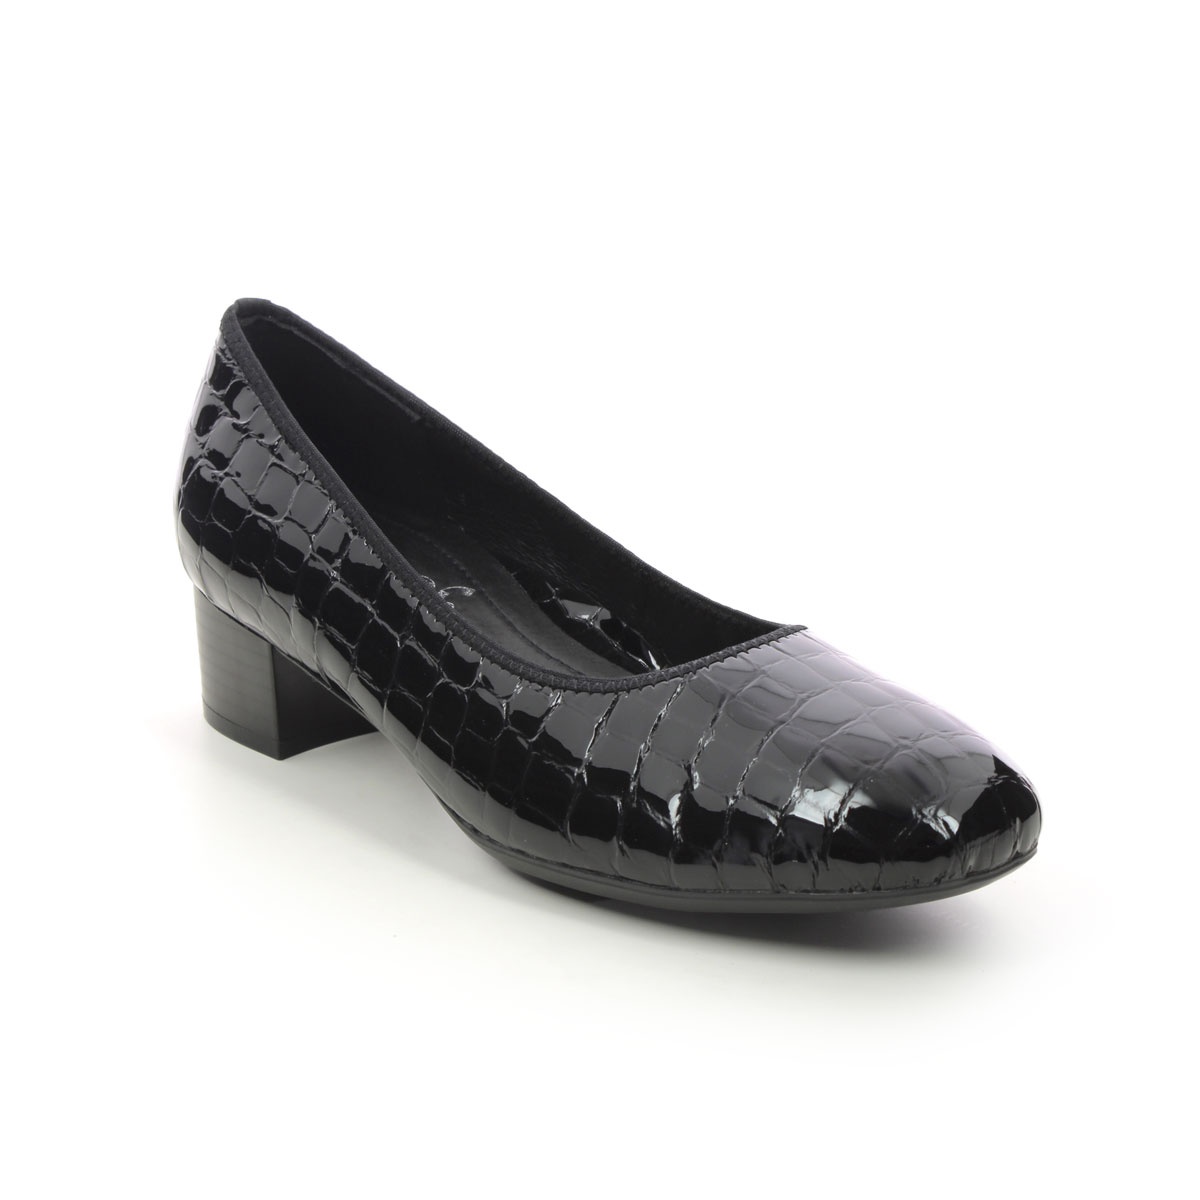 Rieker Develop Graco Black Croc Womens Court Shoes 49260-02 In Size 40 In Plain Black Croc Effect